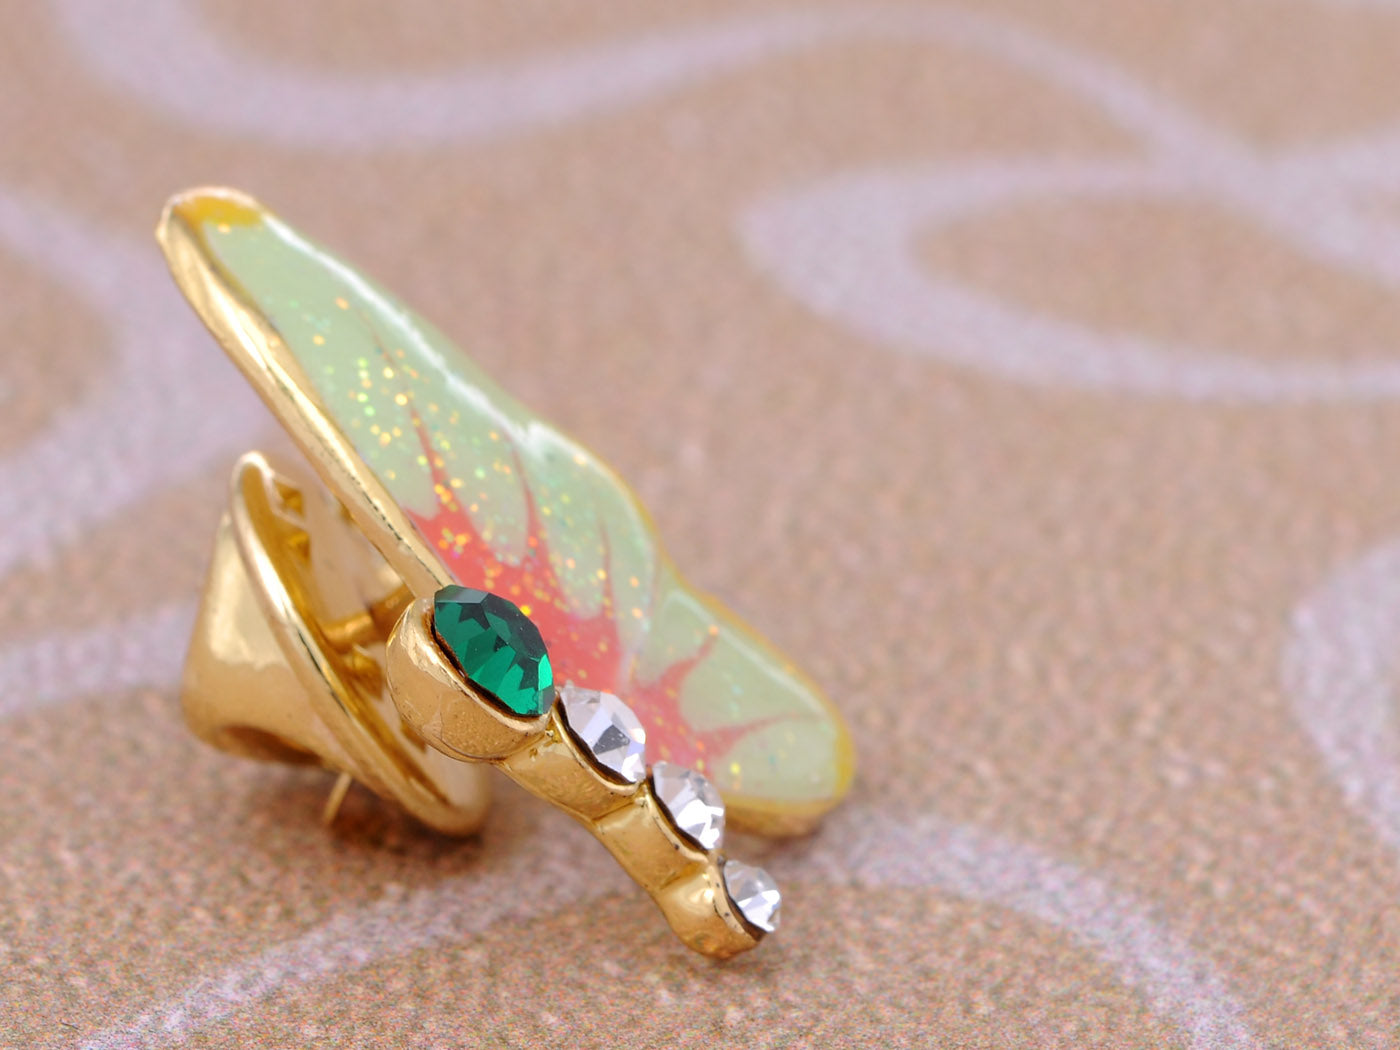 Mini Enamel Glitter Painted Winged Butterfly Pin Brooch